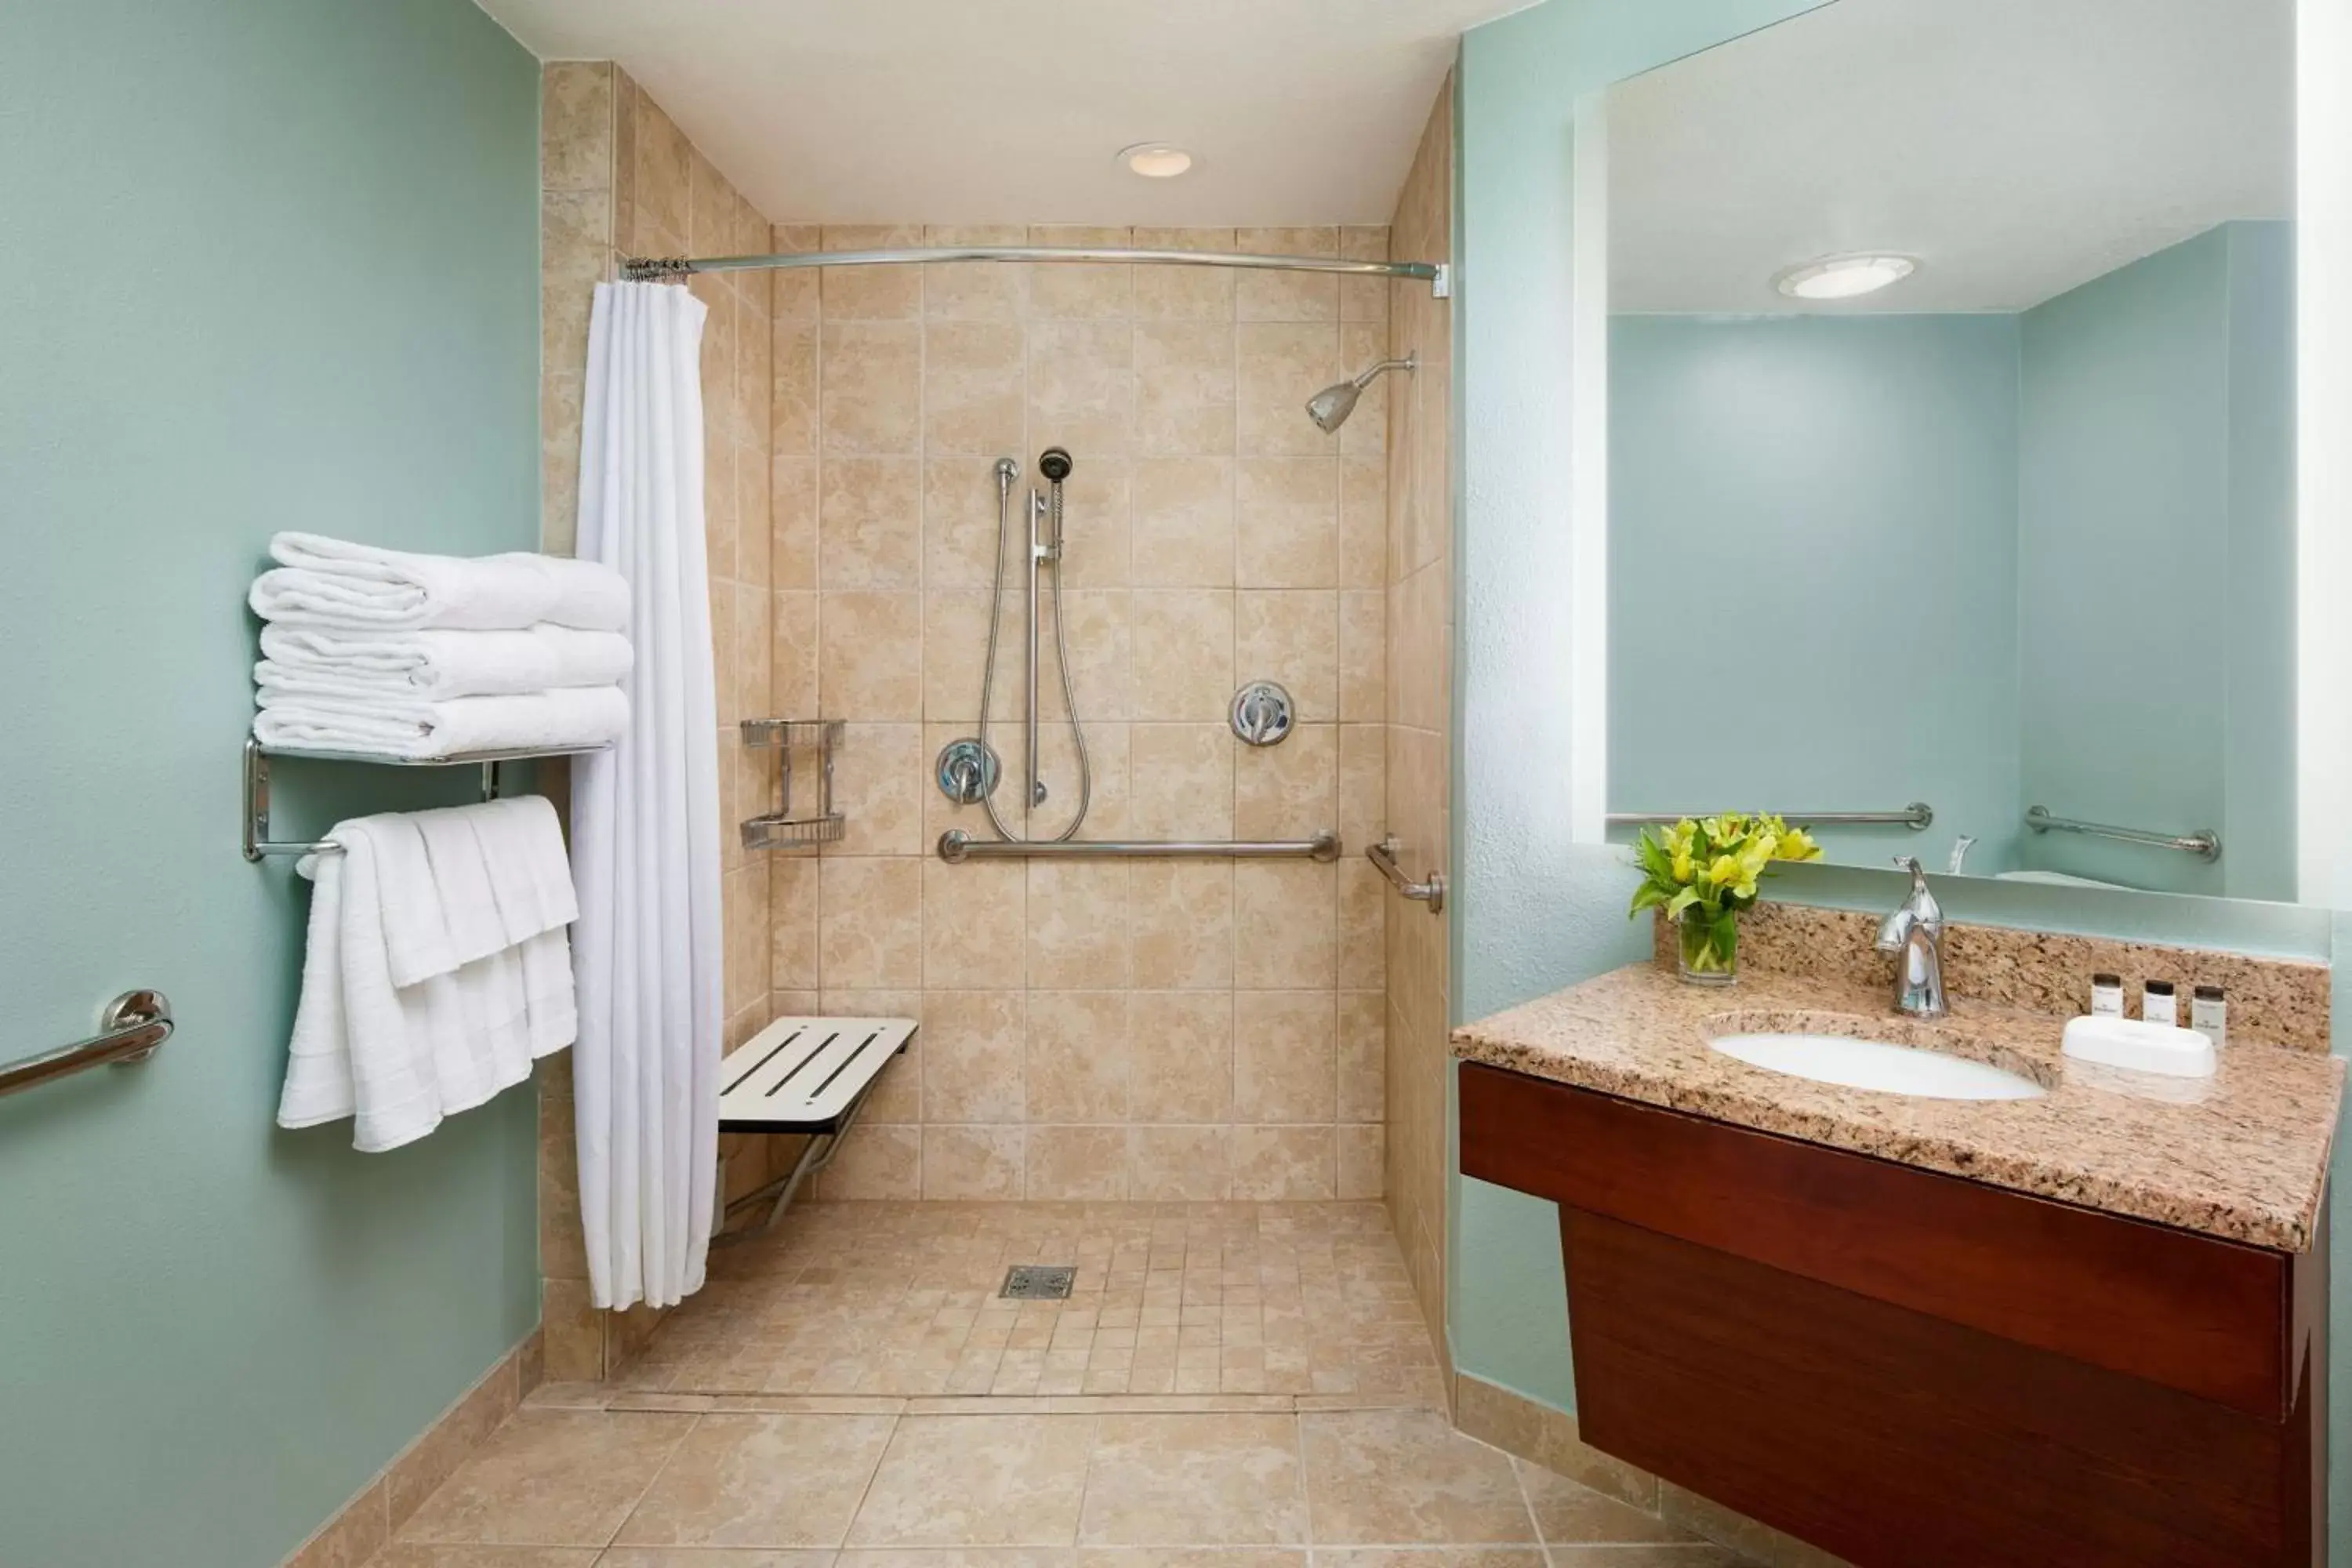 Bathroom in Sheraton Vistana Resort Villas, Lake Buena Vista Orlando